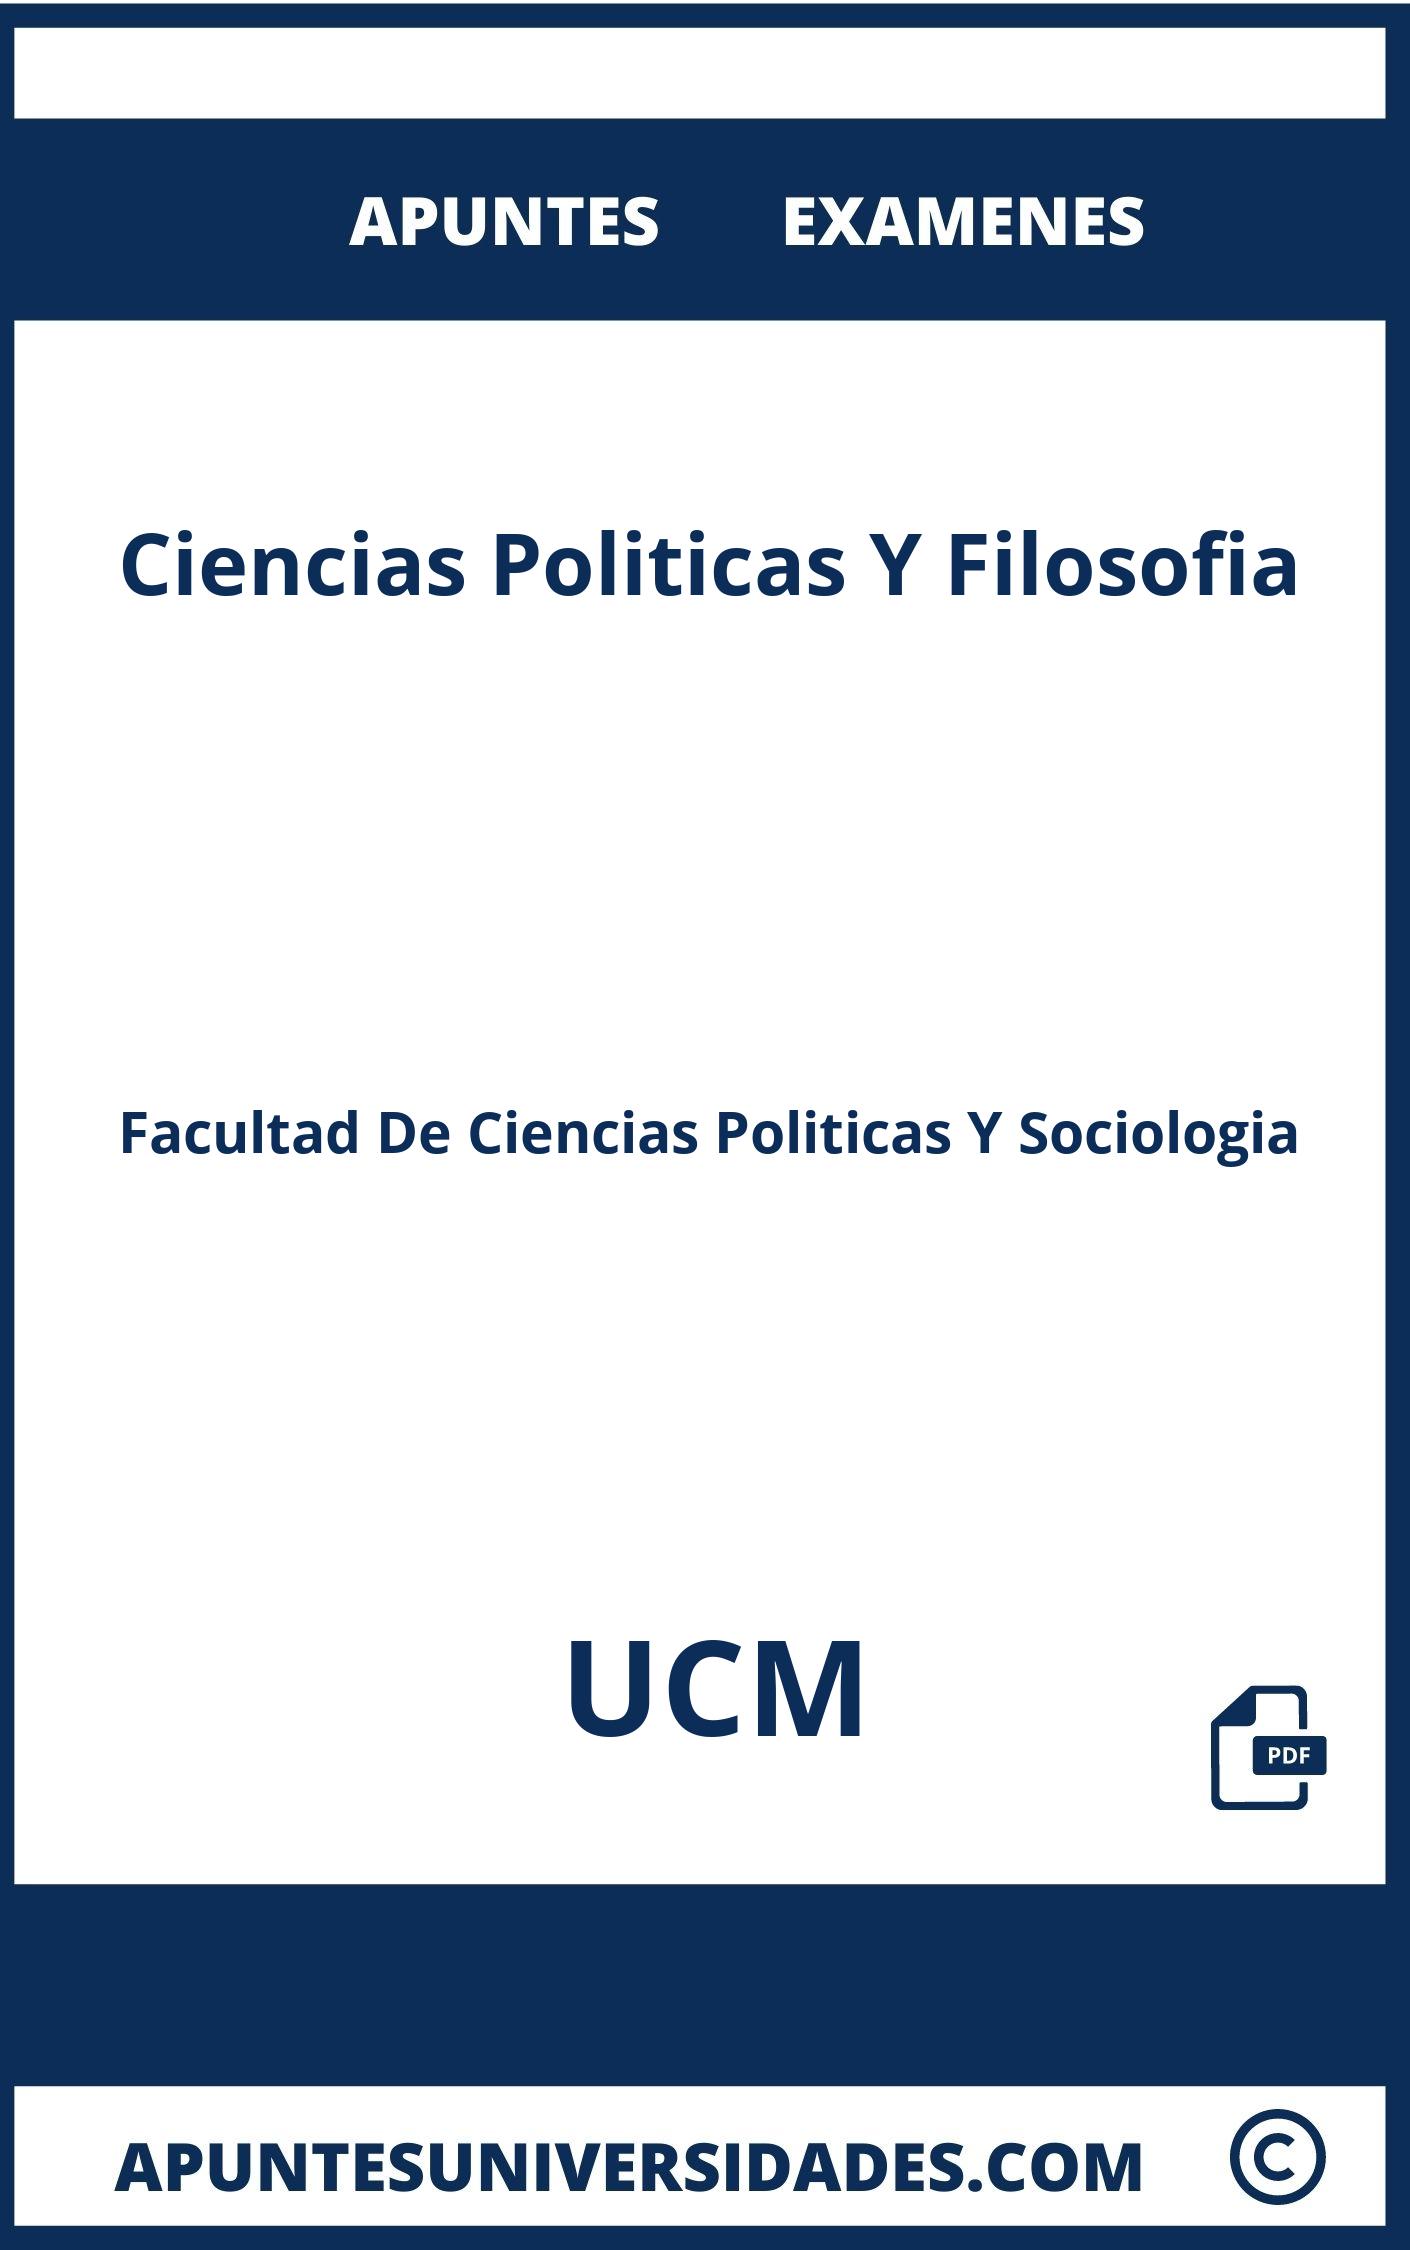 Ciencias Politicas Y Filosofia UCM Apuntes Examenes